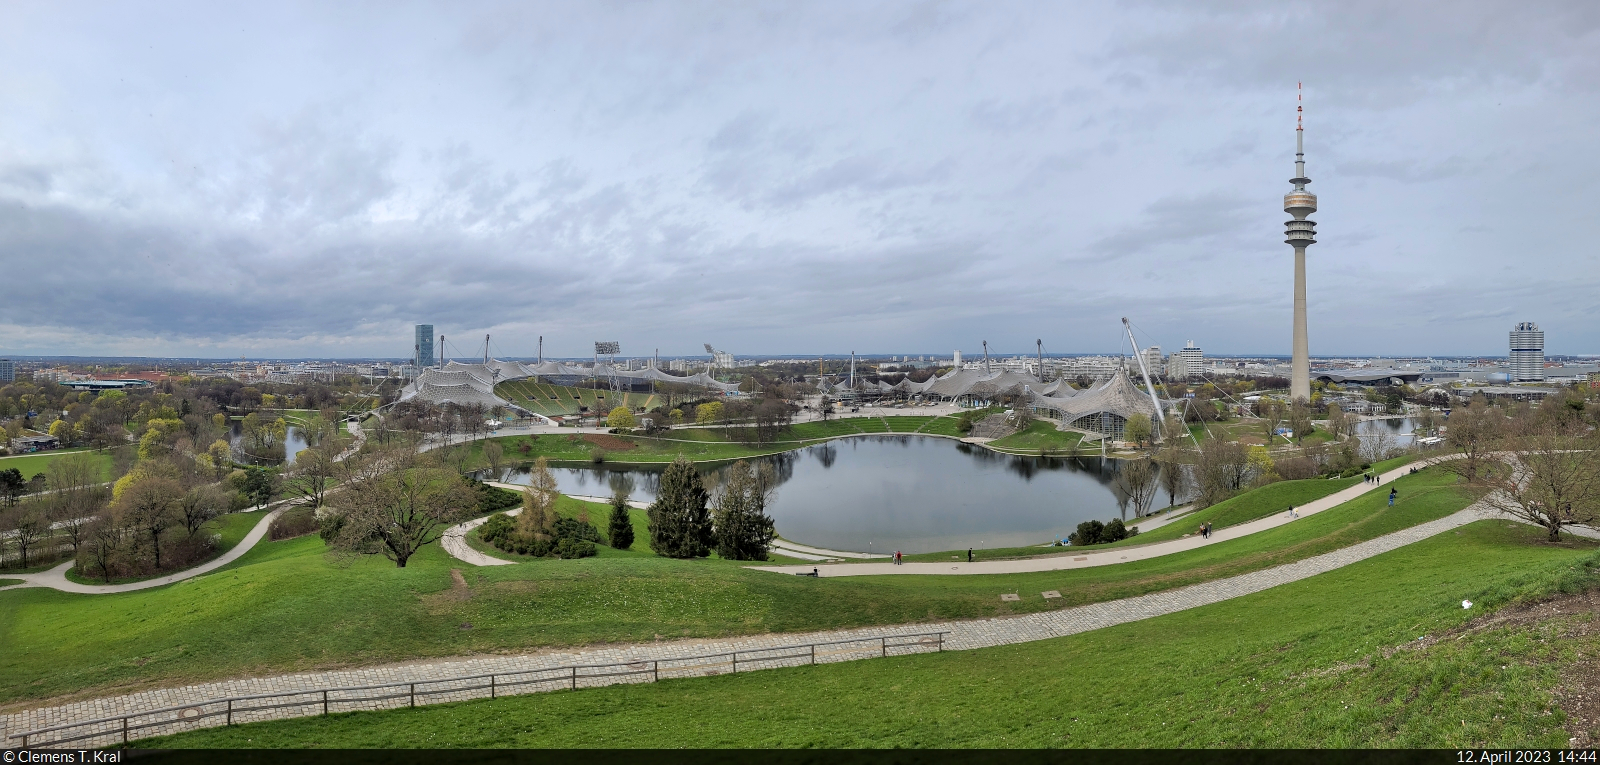 Panorama vom Olympiapark in Mnchen: im Vordergrund der Olympiasee, dahinter das Olympiastadion, die Olympiahalle und der 291 Meter hohe Olympiaturm.

🕓 12.4.2023 | 14:44 Uhr